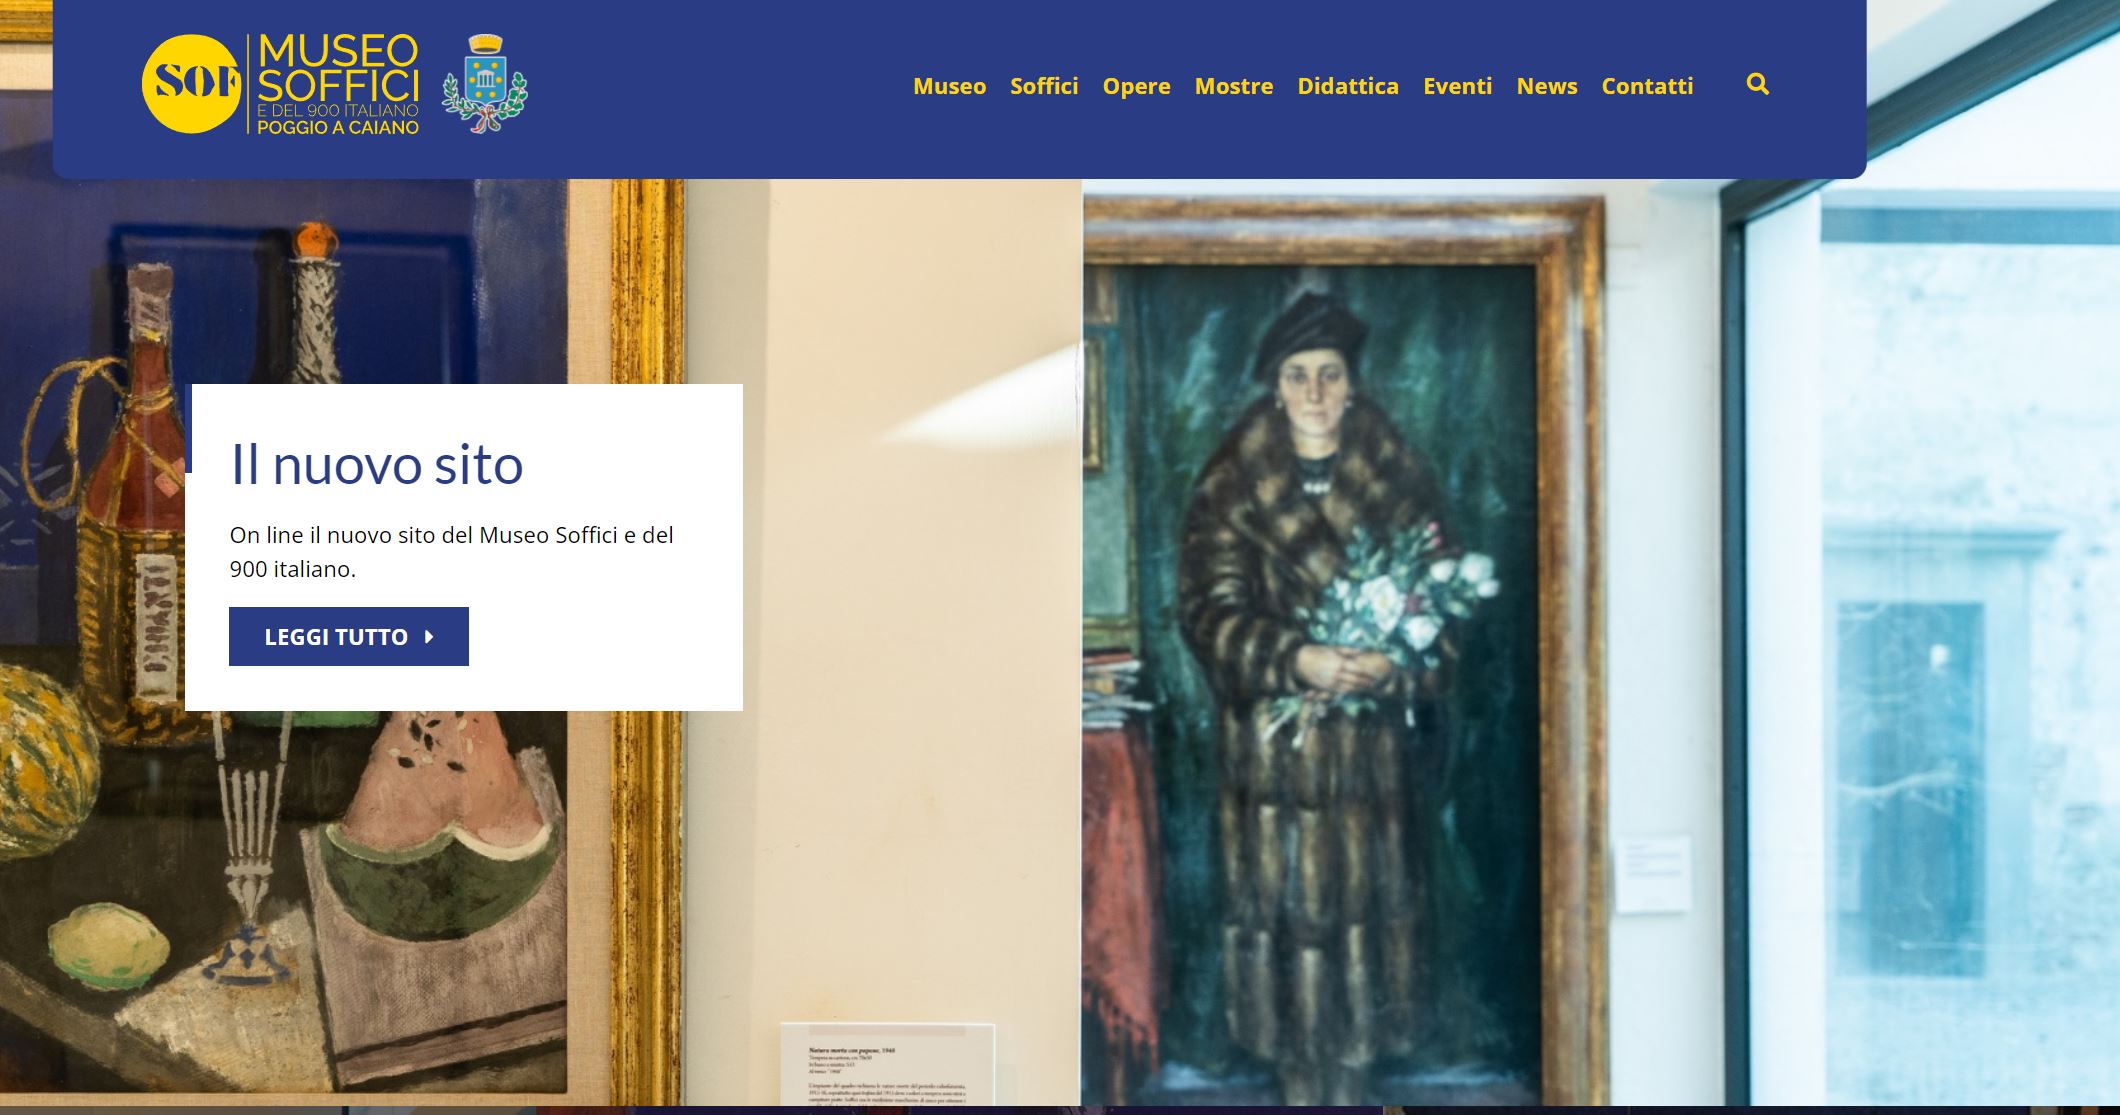 Poggio a Caiano: rinnovato sito web del Museo Soffici